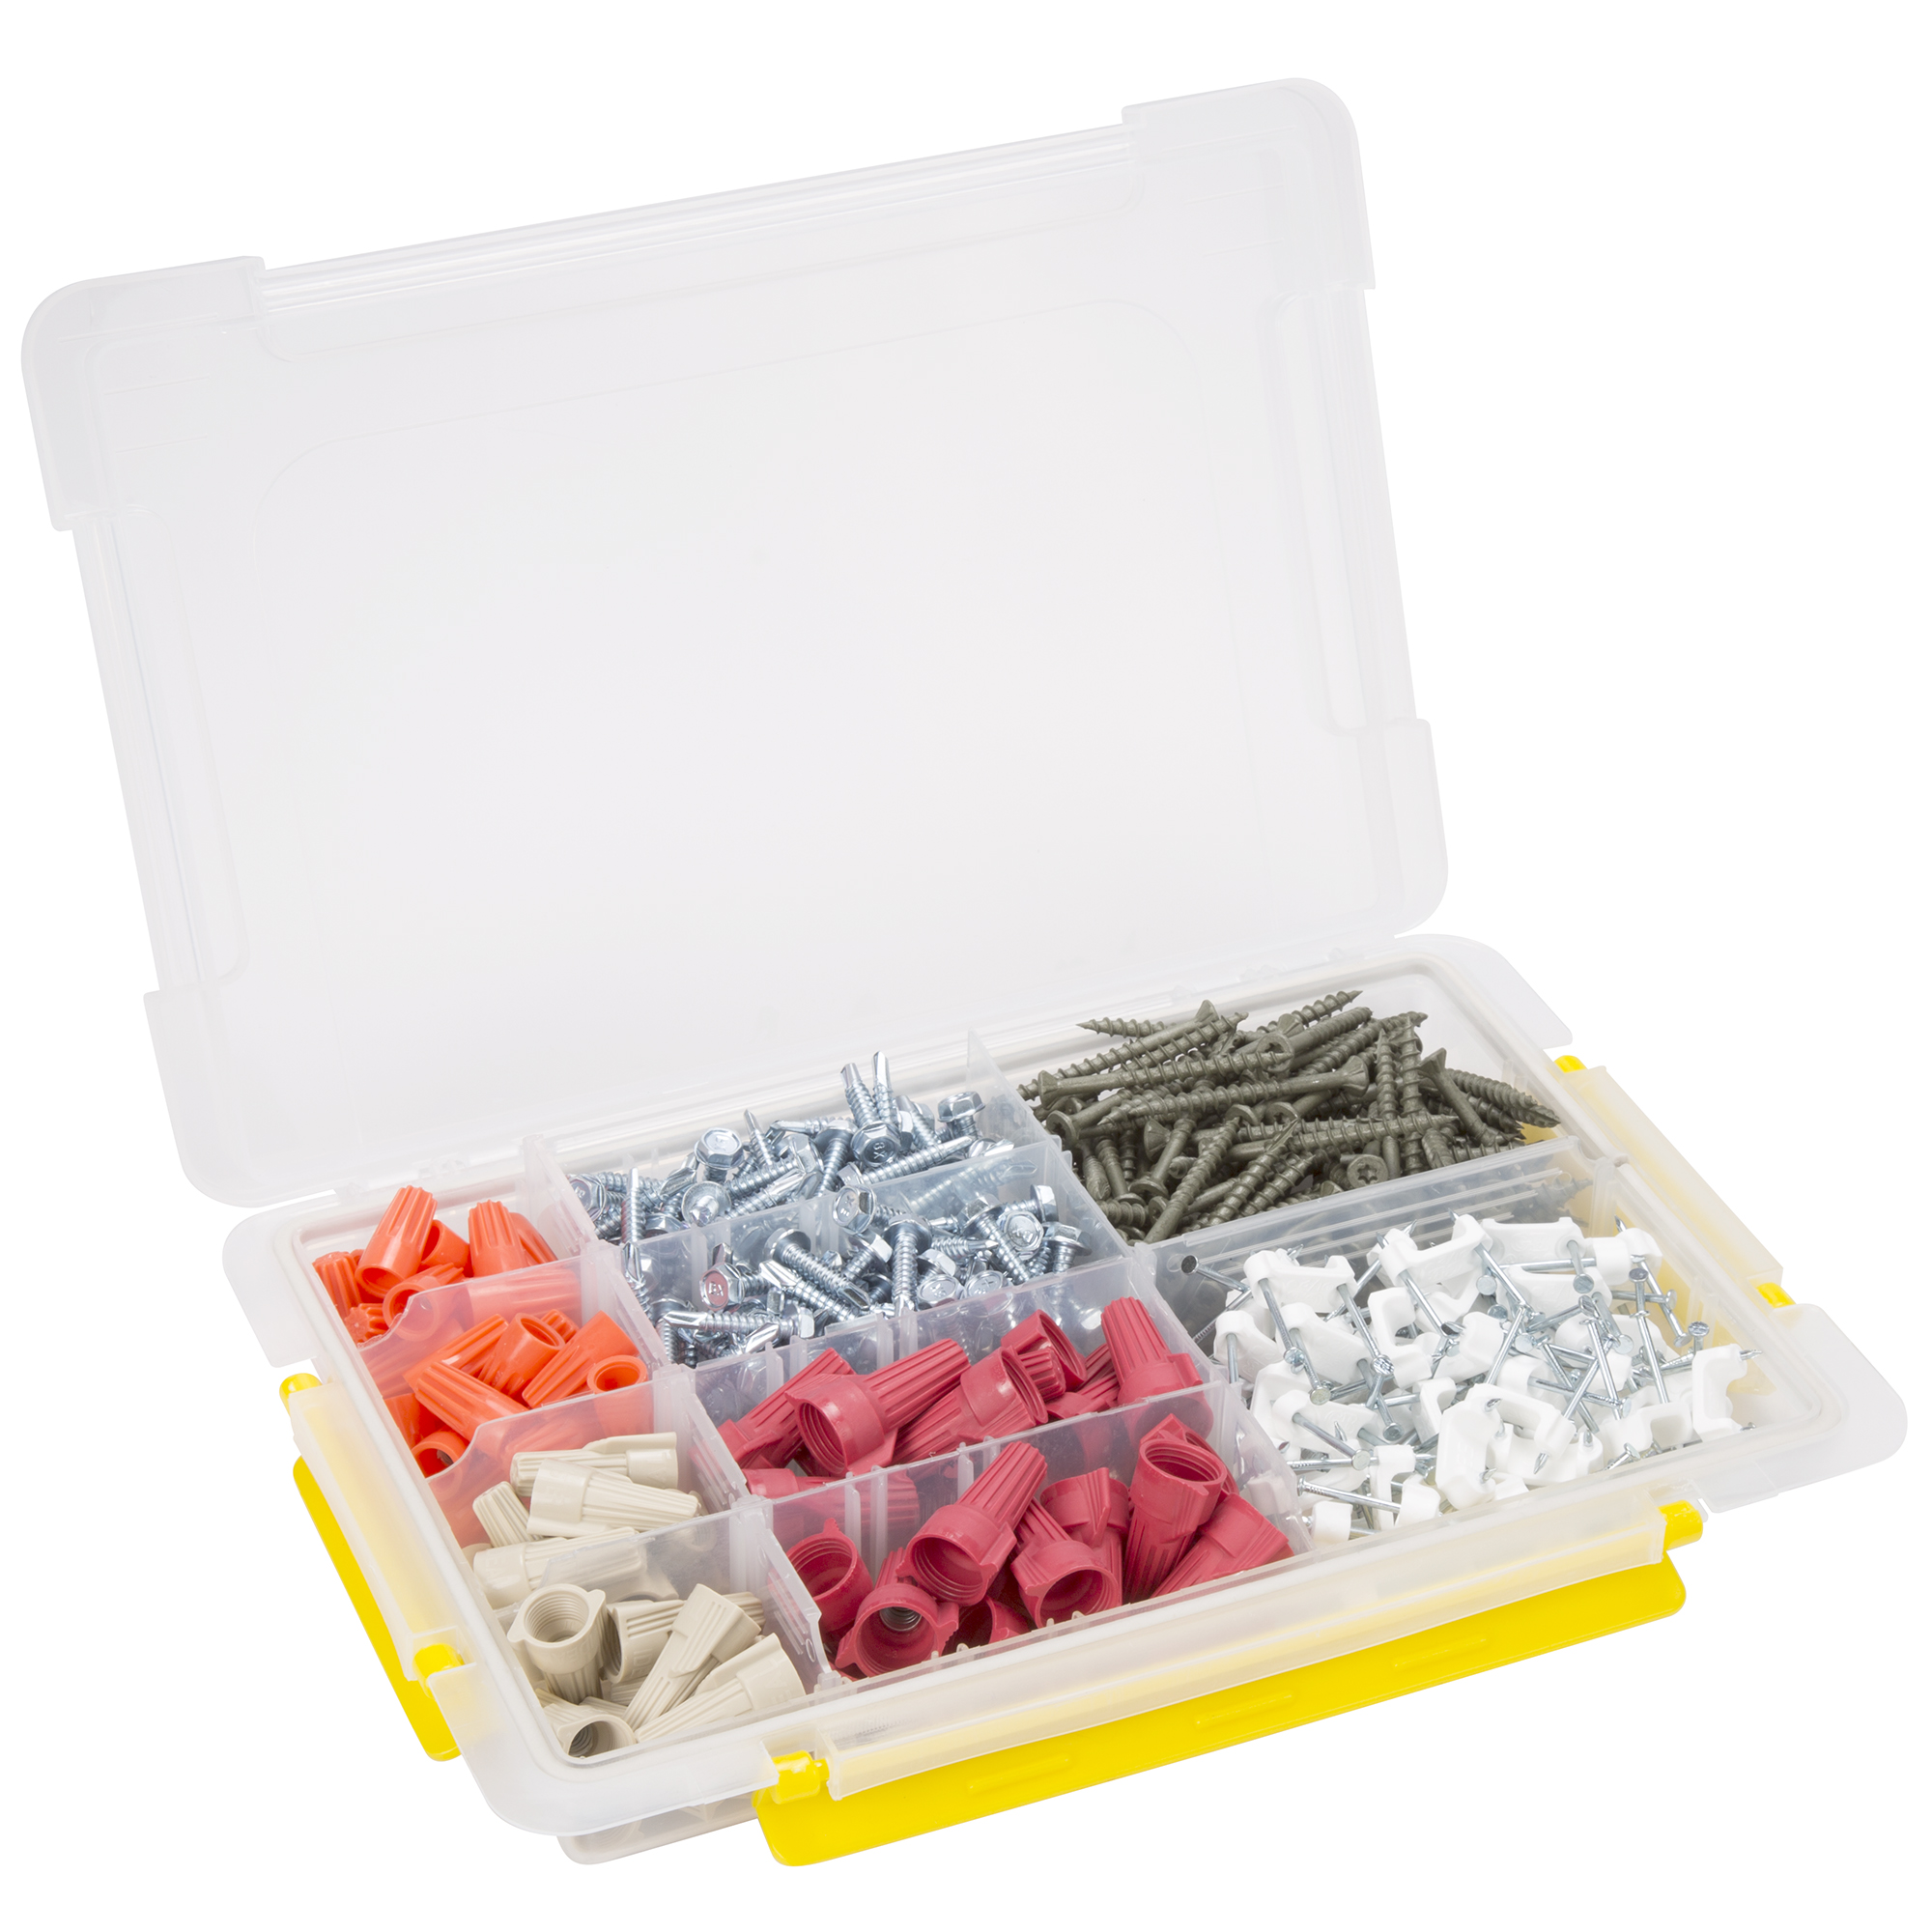 Stalwart Parts & Crafts Storage Organizers 6 Tool Box Set - Free Shipping